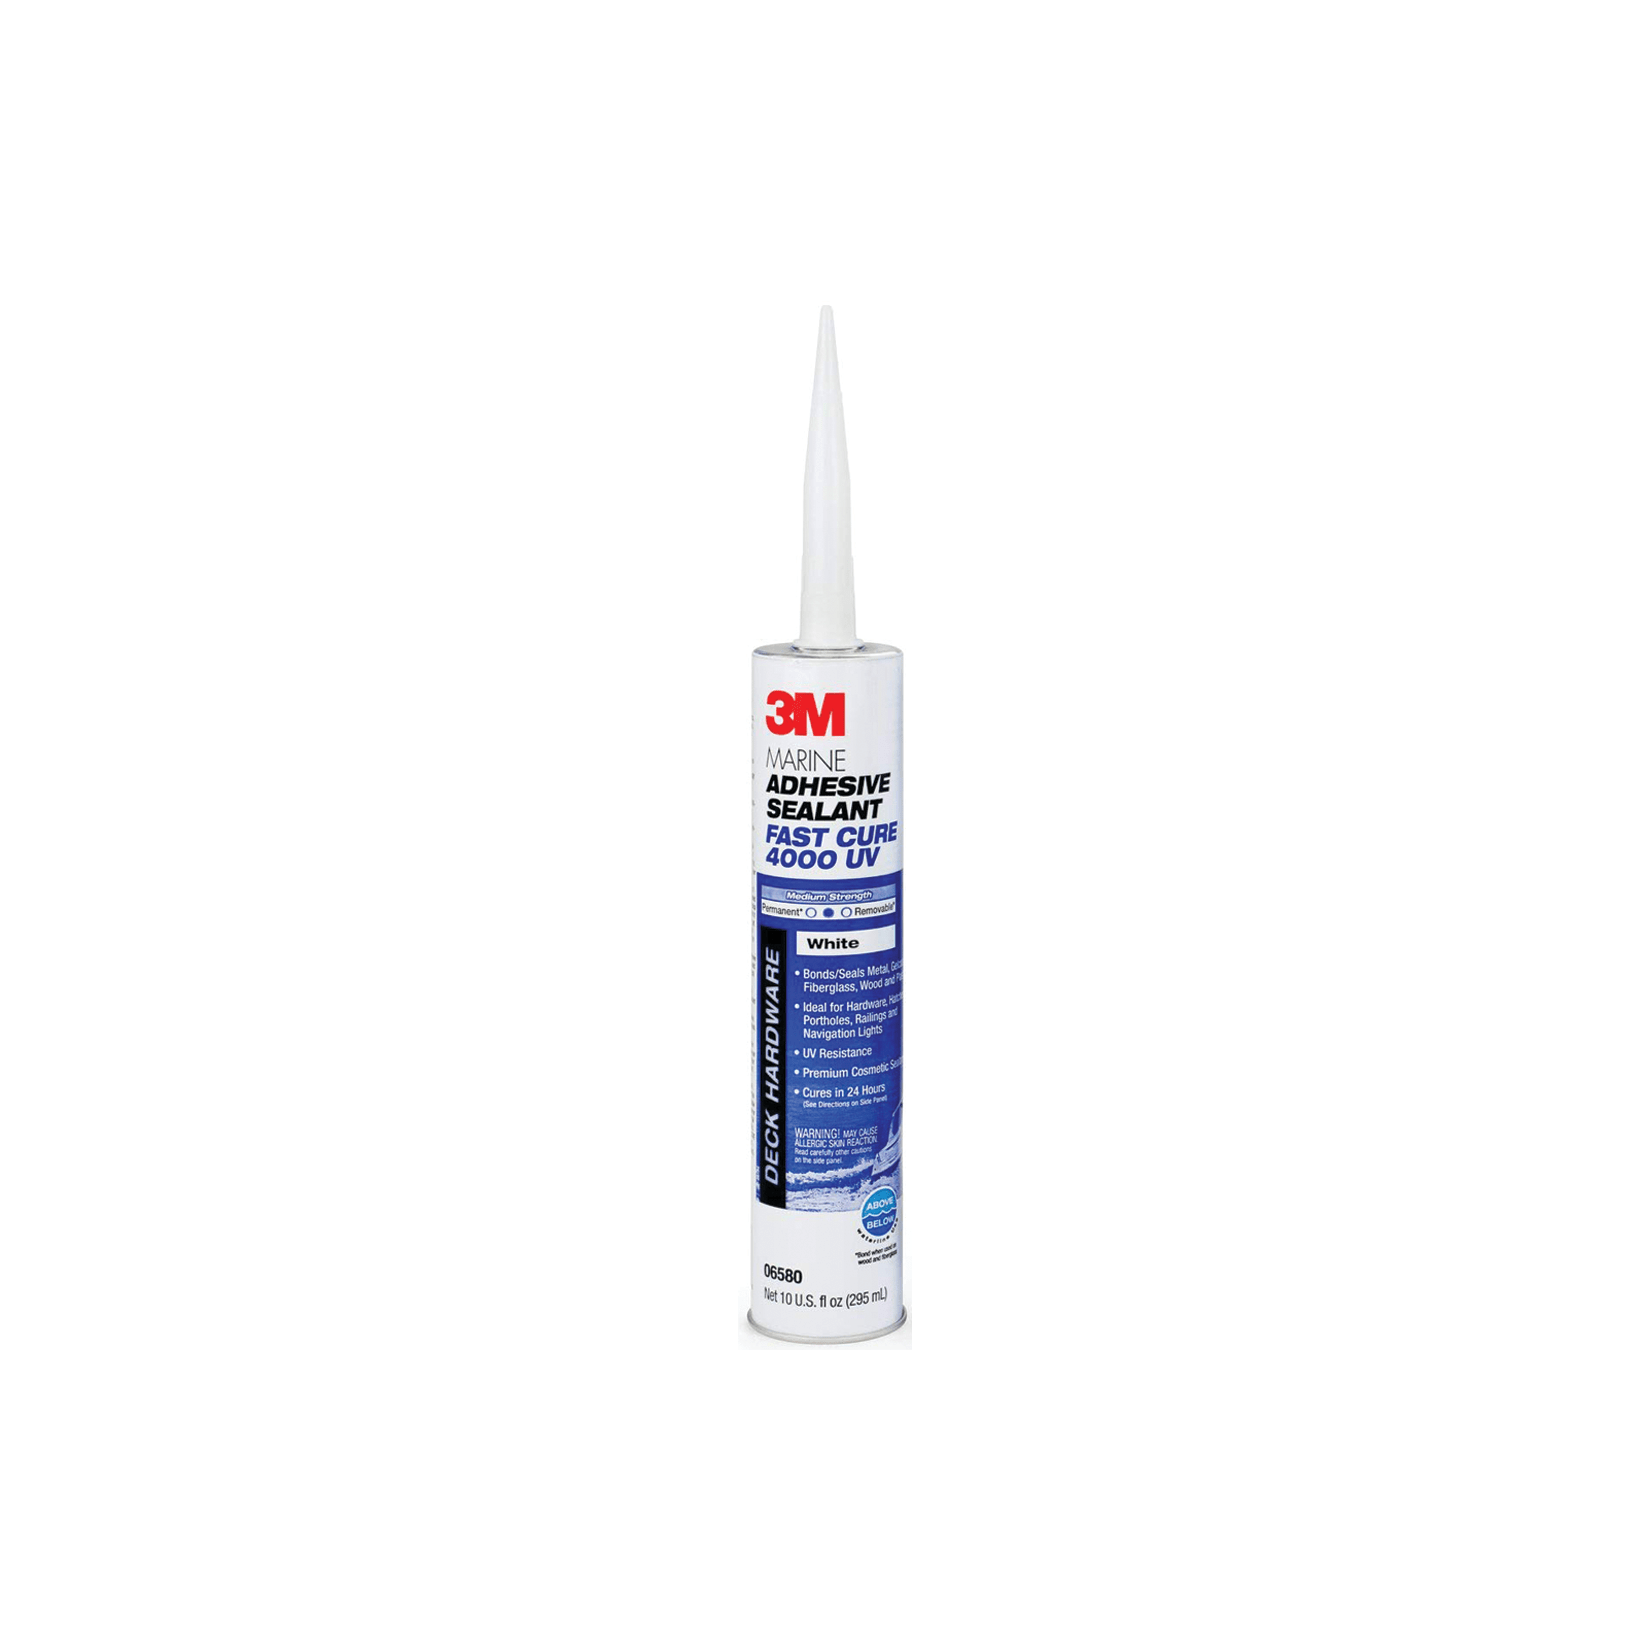 All Purpose Glue Construction Glue Clear Craft Glue Barrier Air